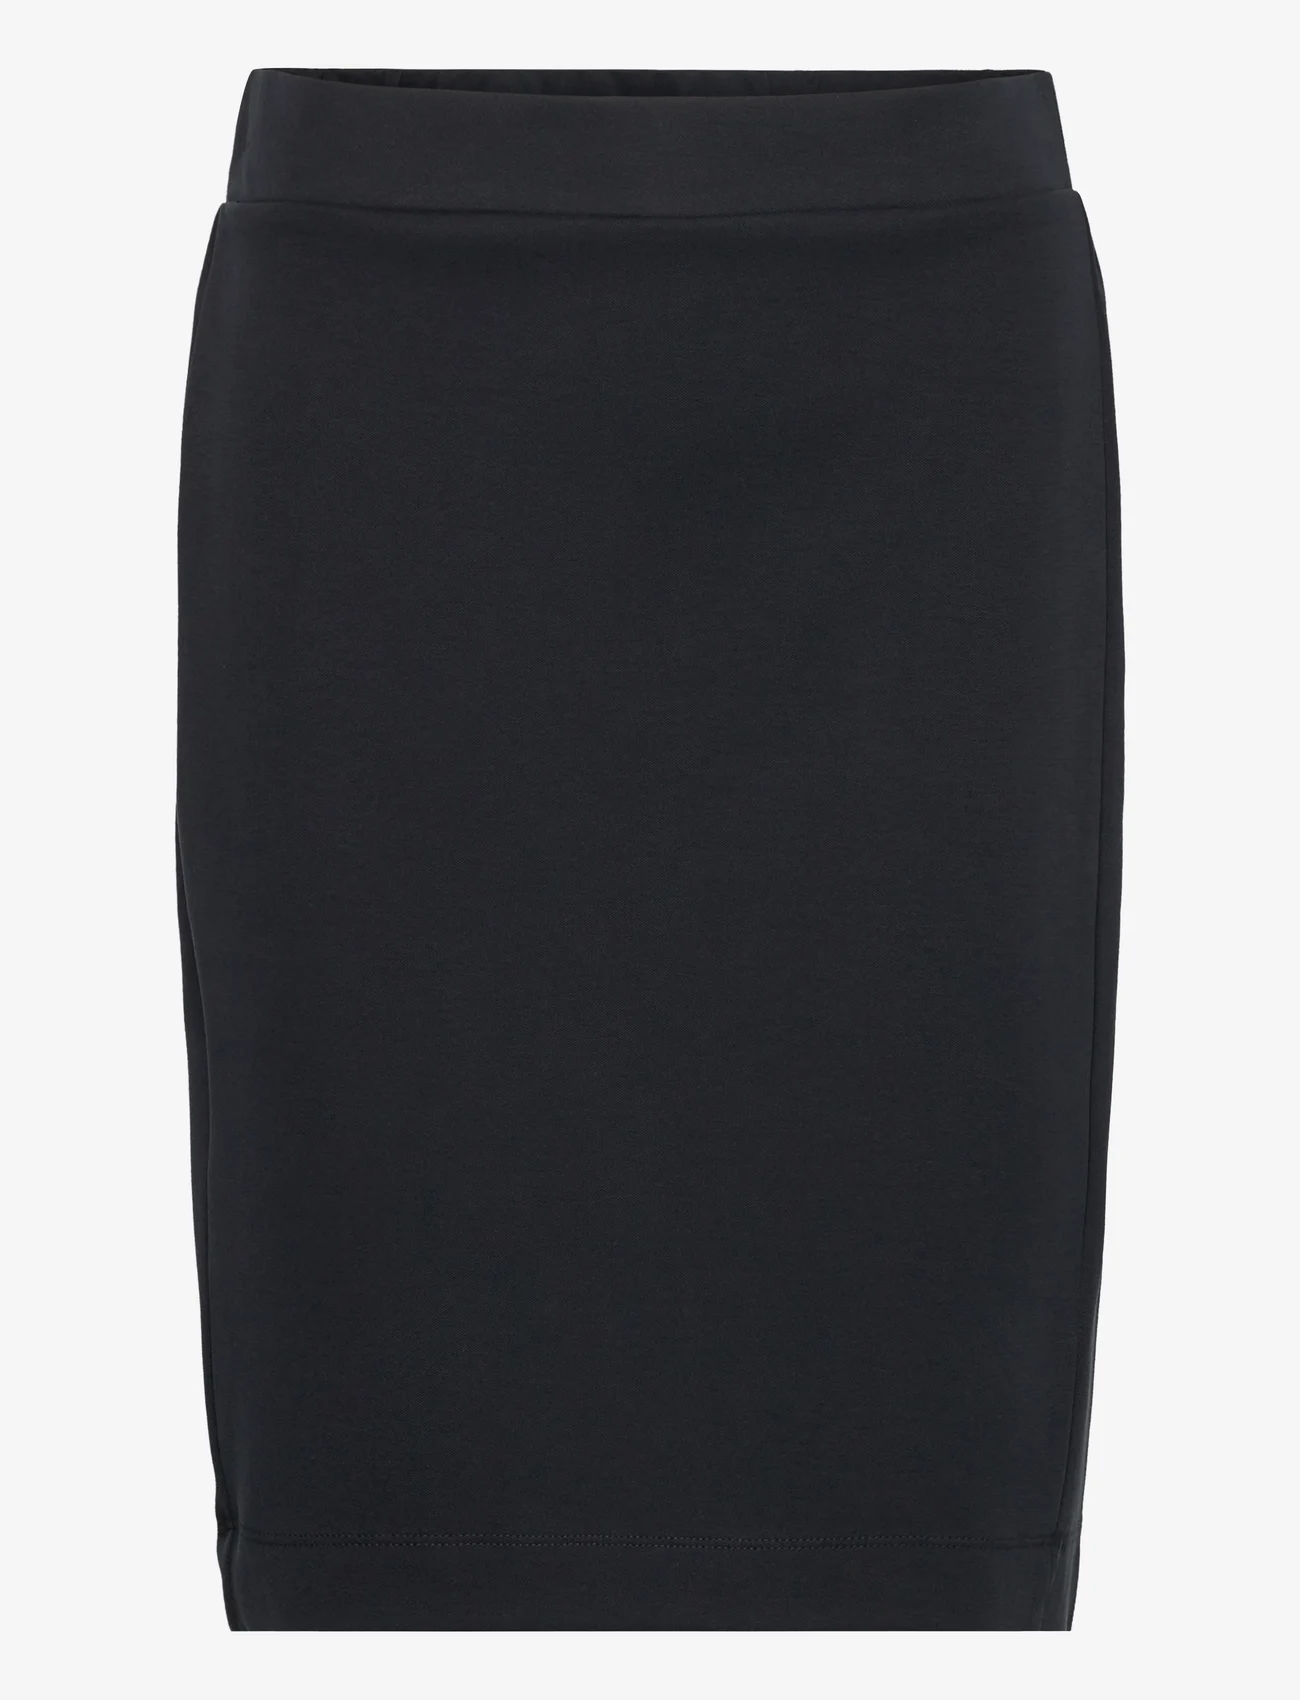 InWear - AronoIW Short Skirt - korta kjolar - black - 0